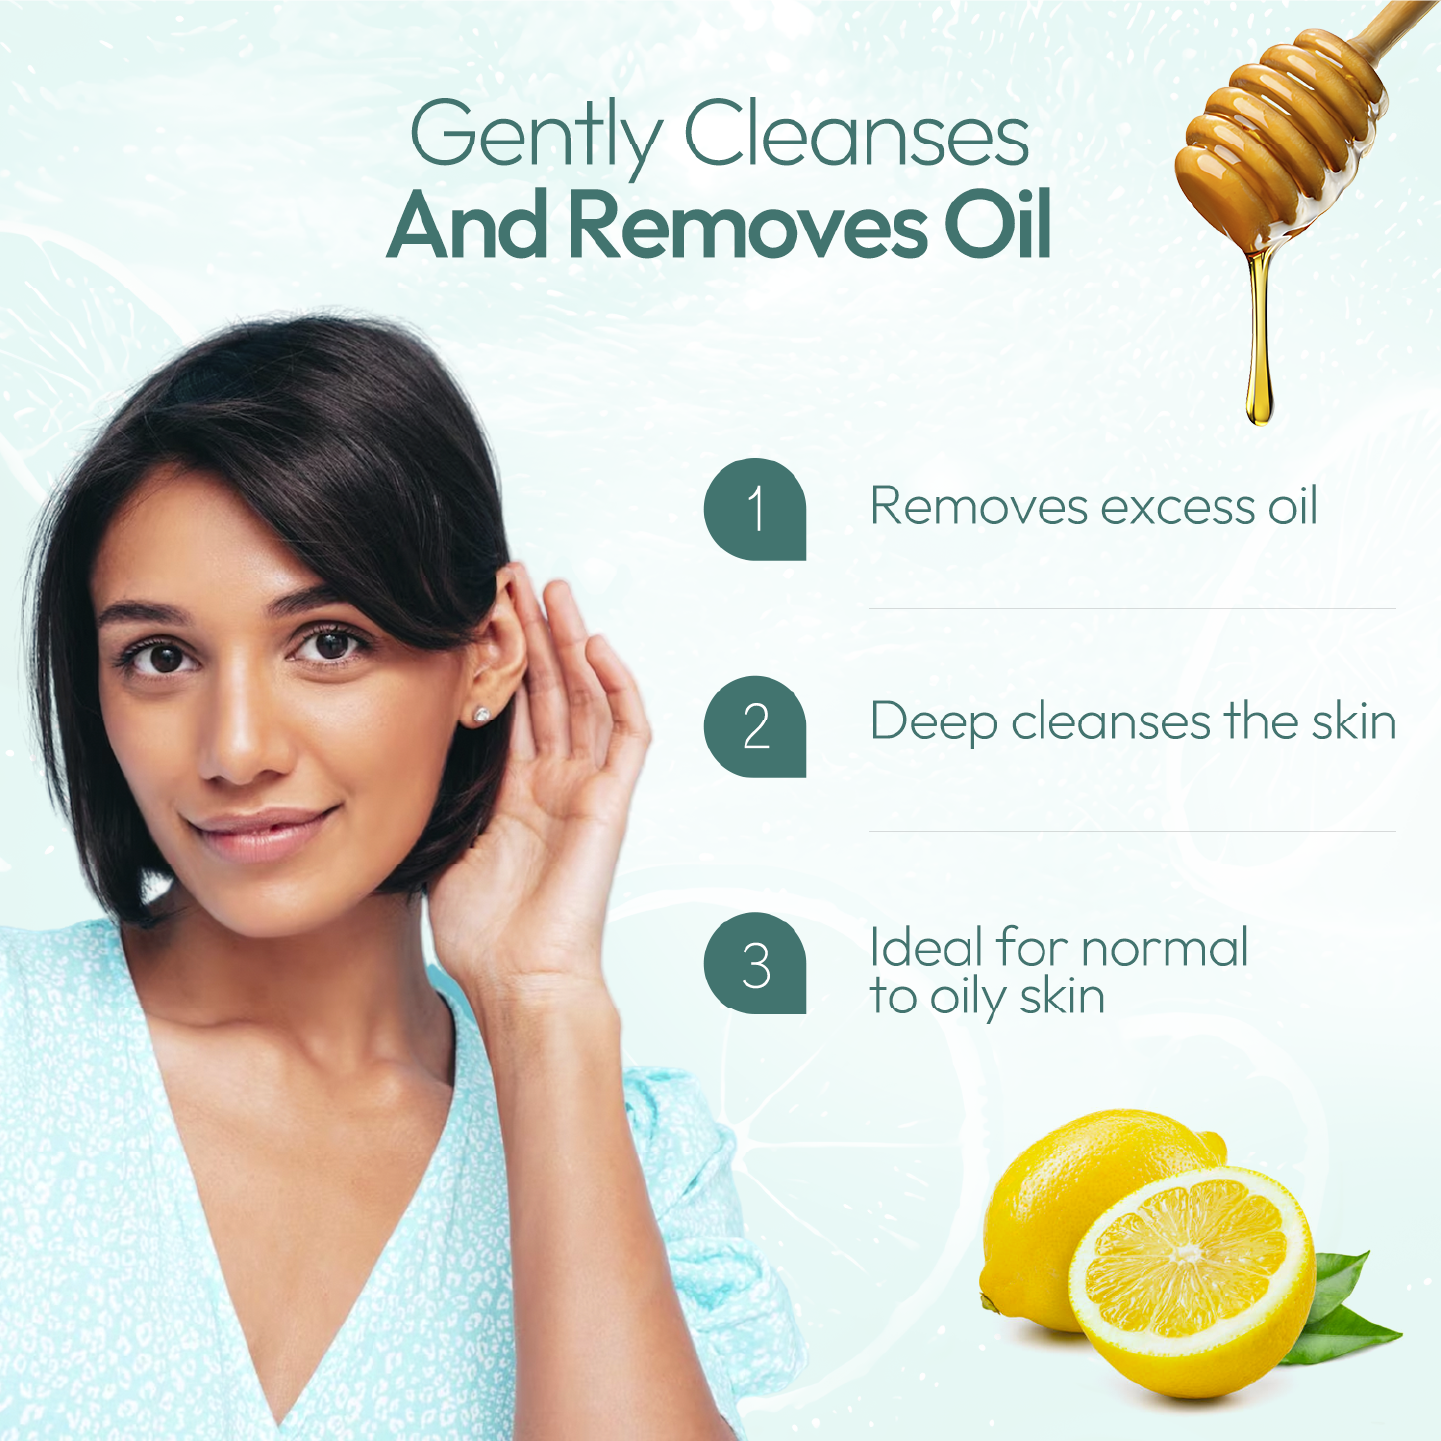 Oil Clear Lemon Face Wash